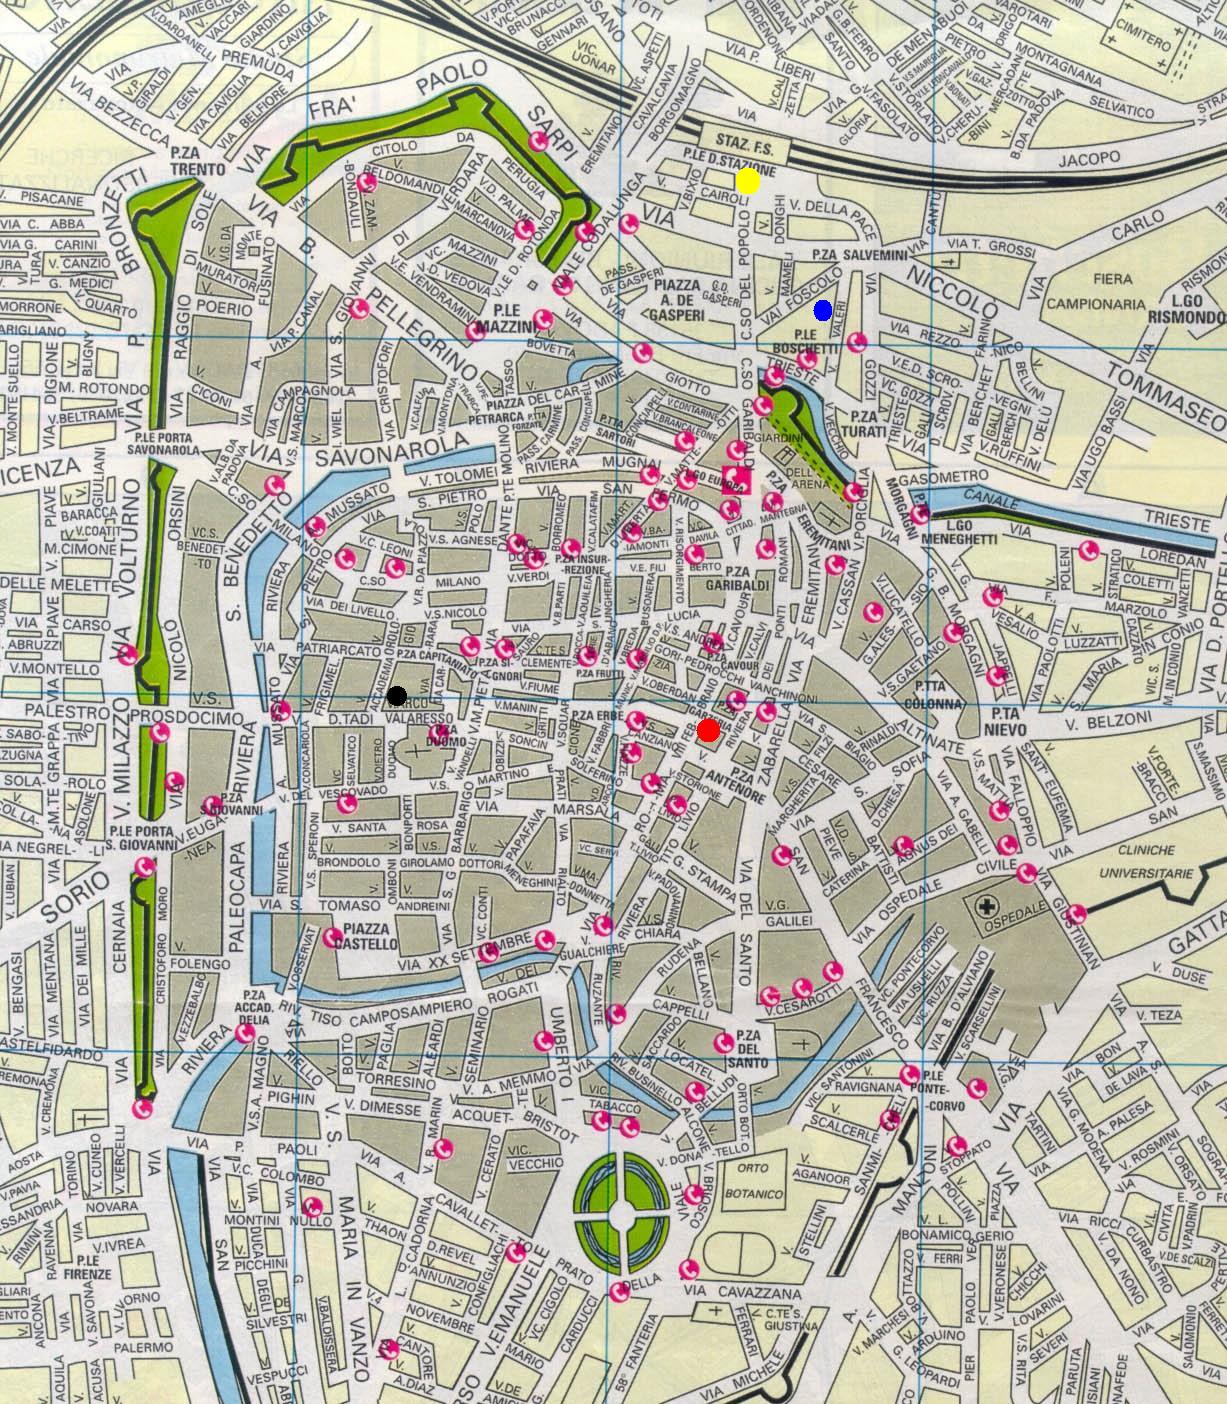 Padua centre map.